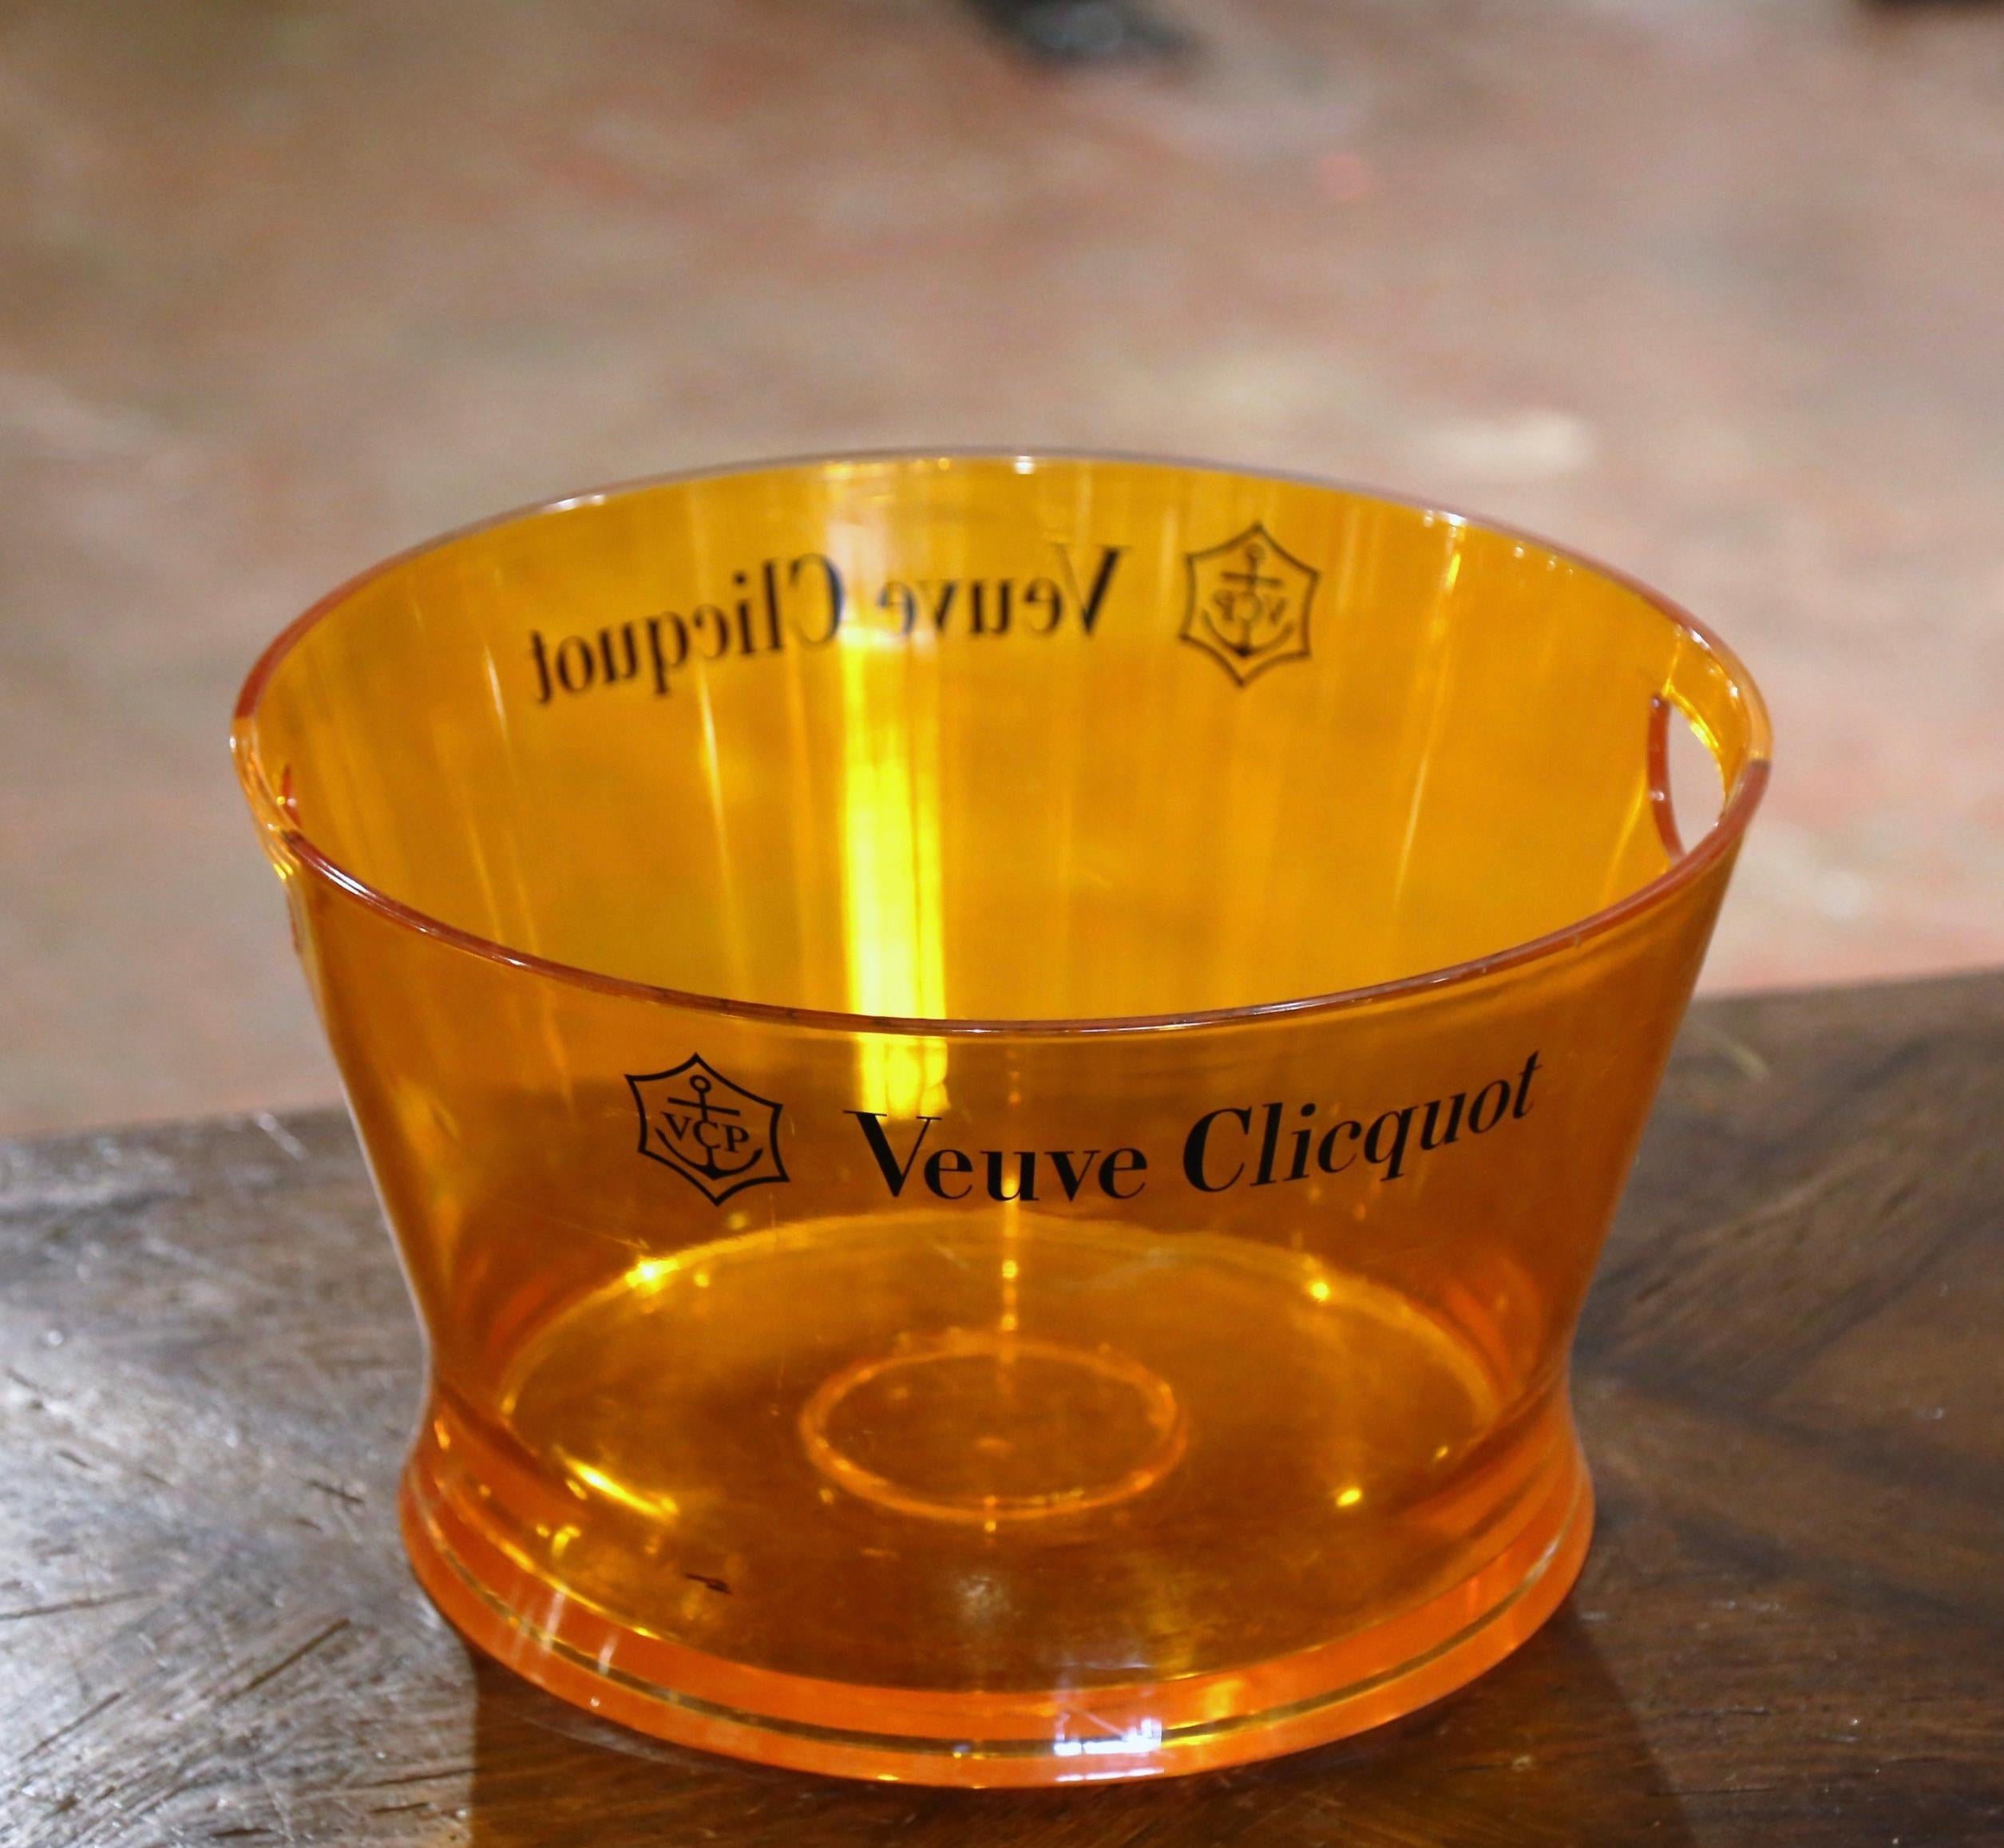 Dekorieren Sie eine Bar oder einen Weinkeller mit diesem eleganten und seltenen Champagnerkühler. Der um 1980 in Frankreich gefertigte Eimer aus Hartplastik stammt aus dem legendären Haus Veuve Clicquot. Die orangefarbene Wanne mit den